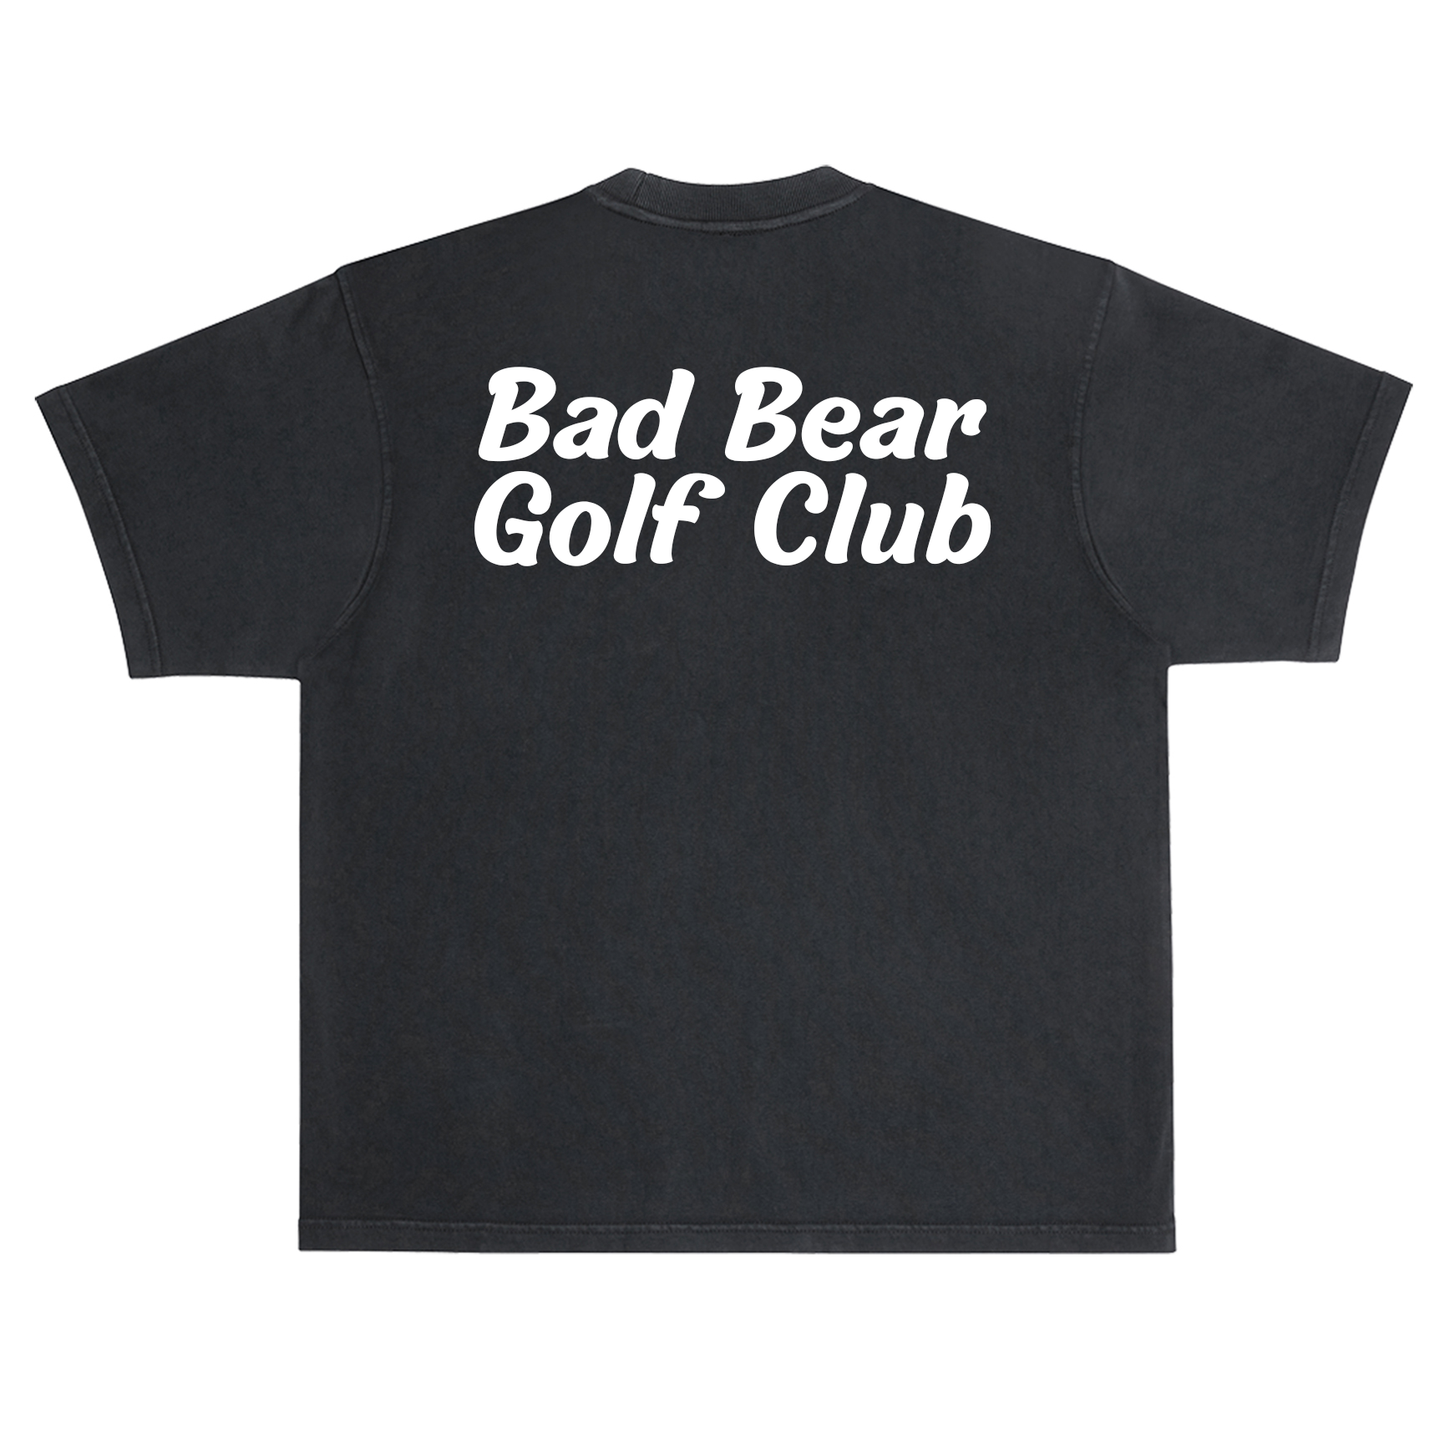 Bad Bear Golf Club Black